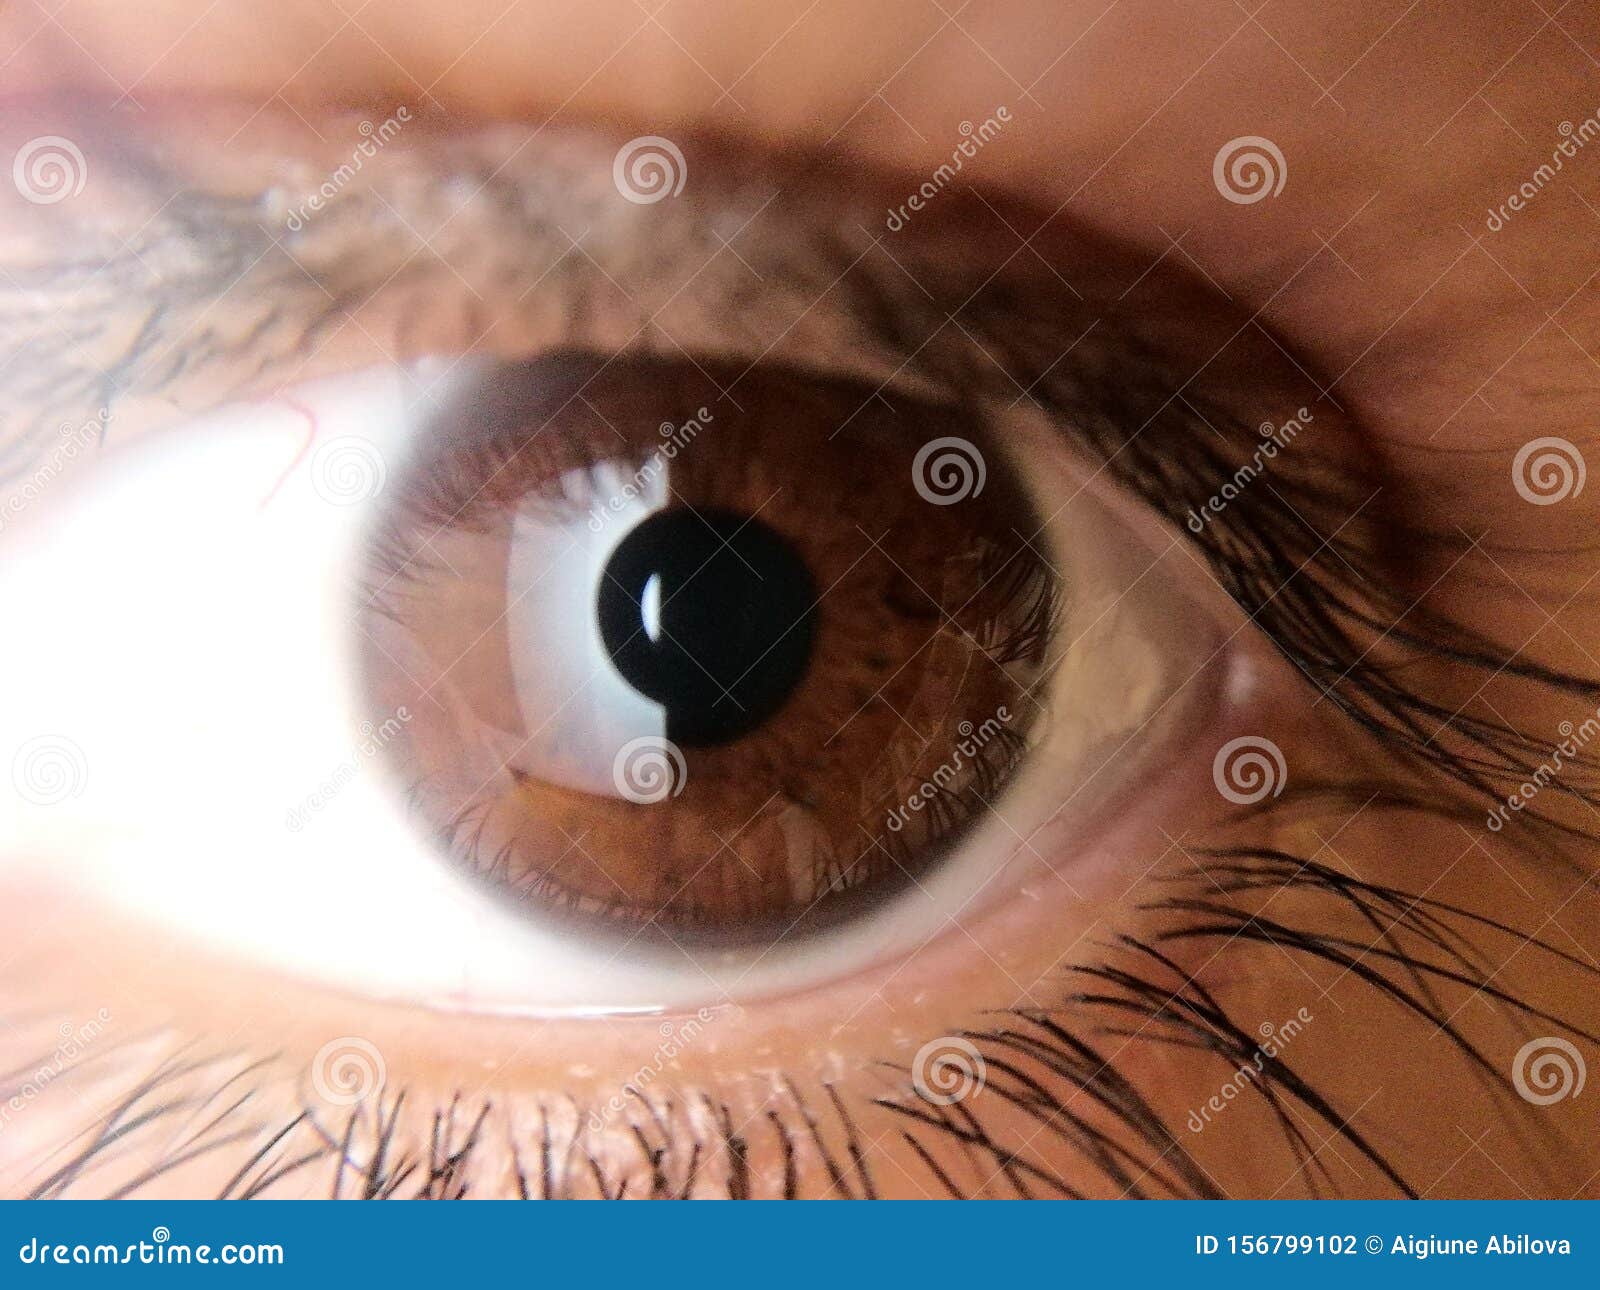 Big brown eyes stock photo. Image of eyelashes, brown - 156799102